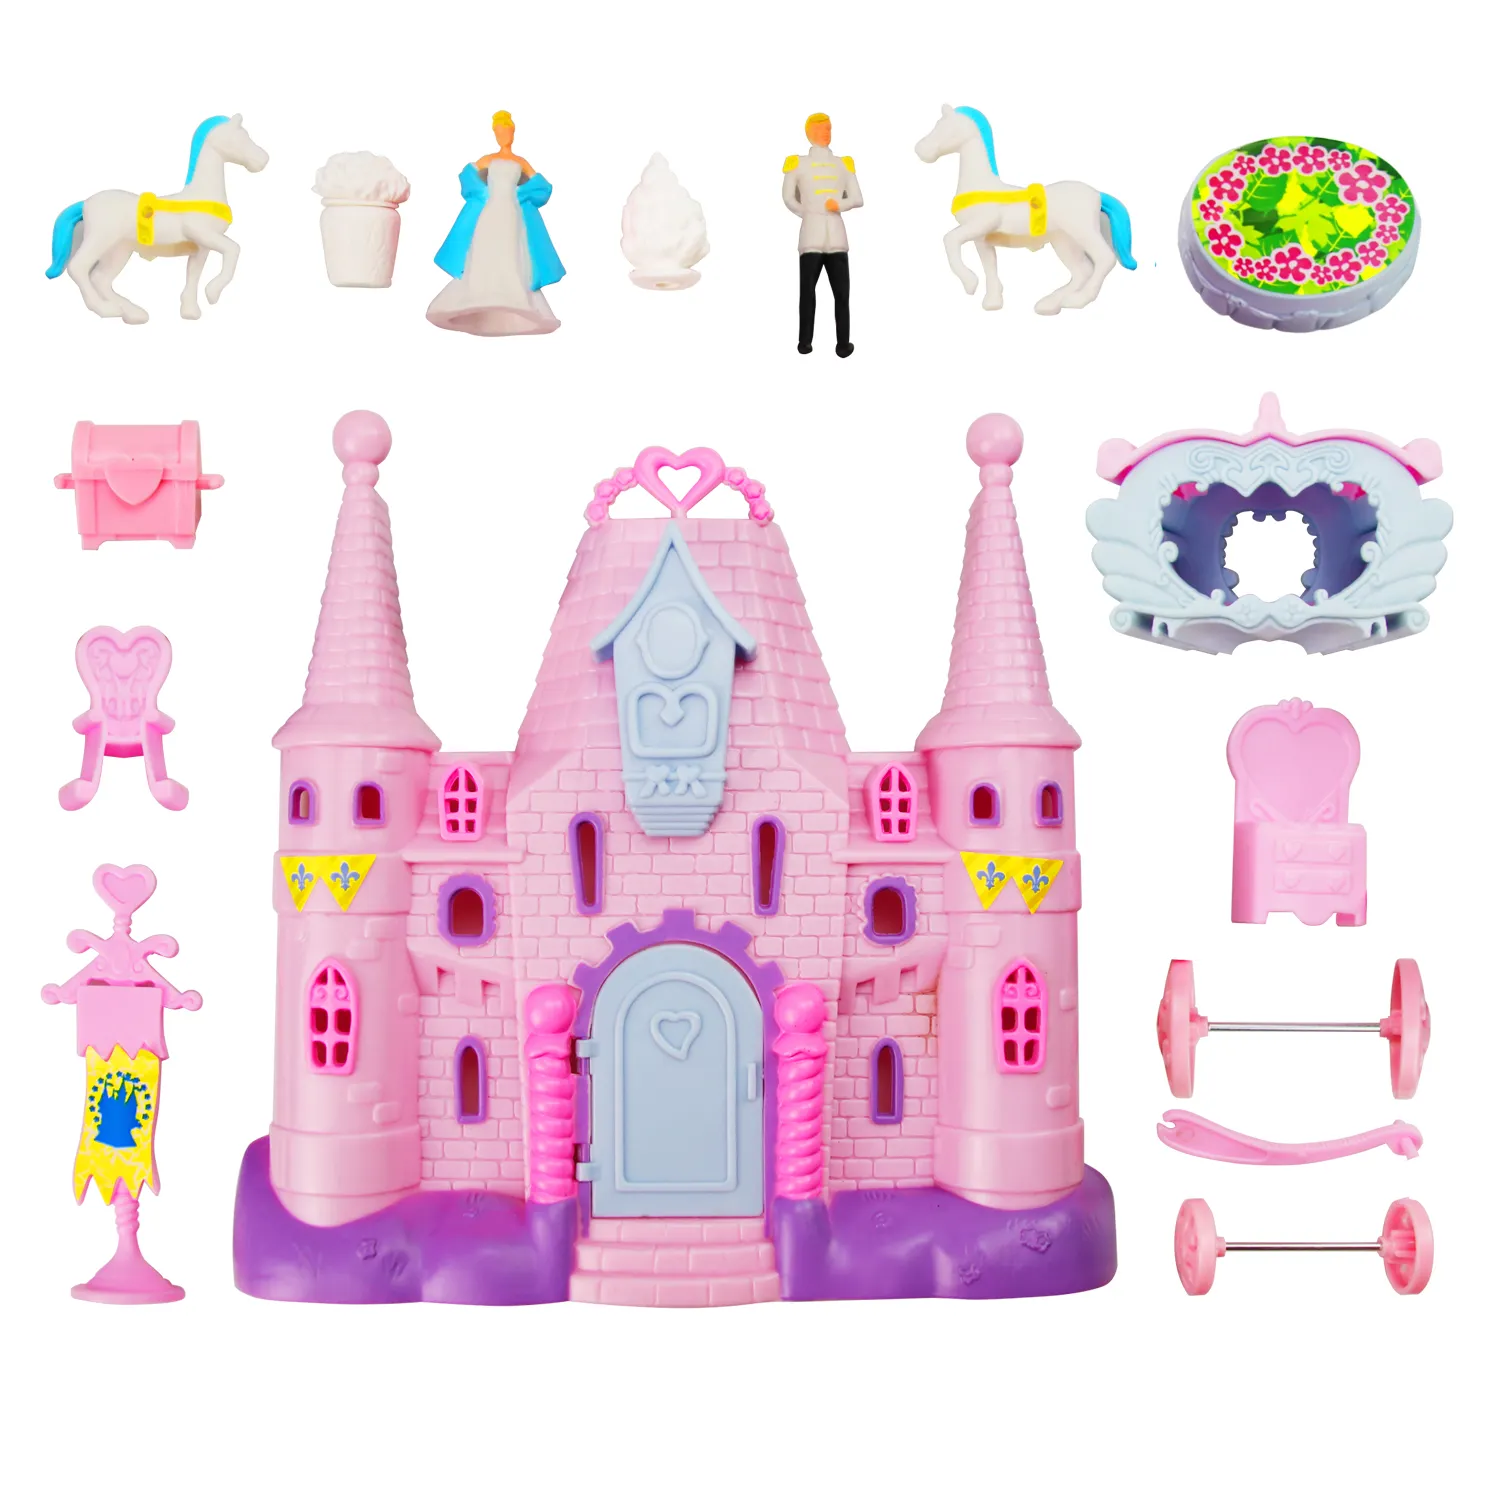 OEM Toy Factory Rollenspiel Toy Pink Castle Prinz und Prinzessin Puppenhaus